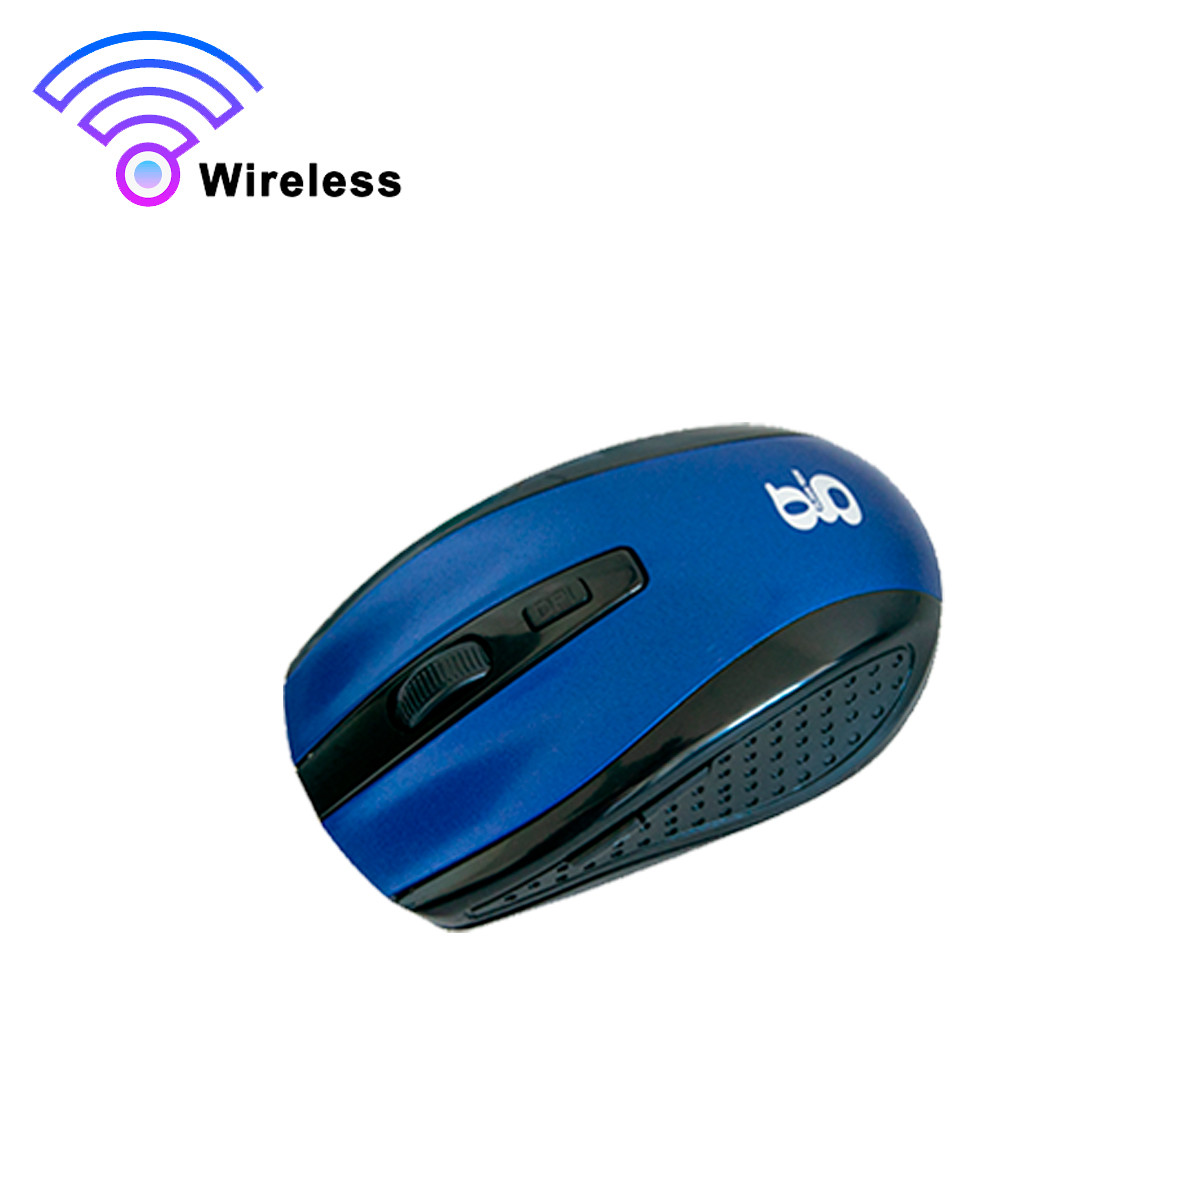 Бездротова мишка для комп'ютера Mouse G109 Wireless Синя мишка для ноутбука та ПК  ⁇  безпровадна ведмедик (ST)